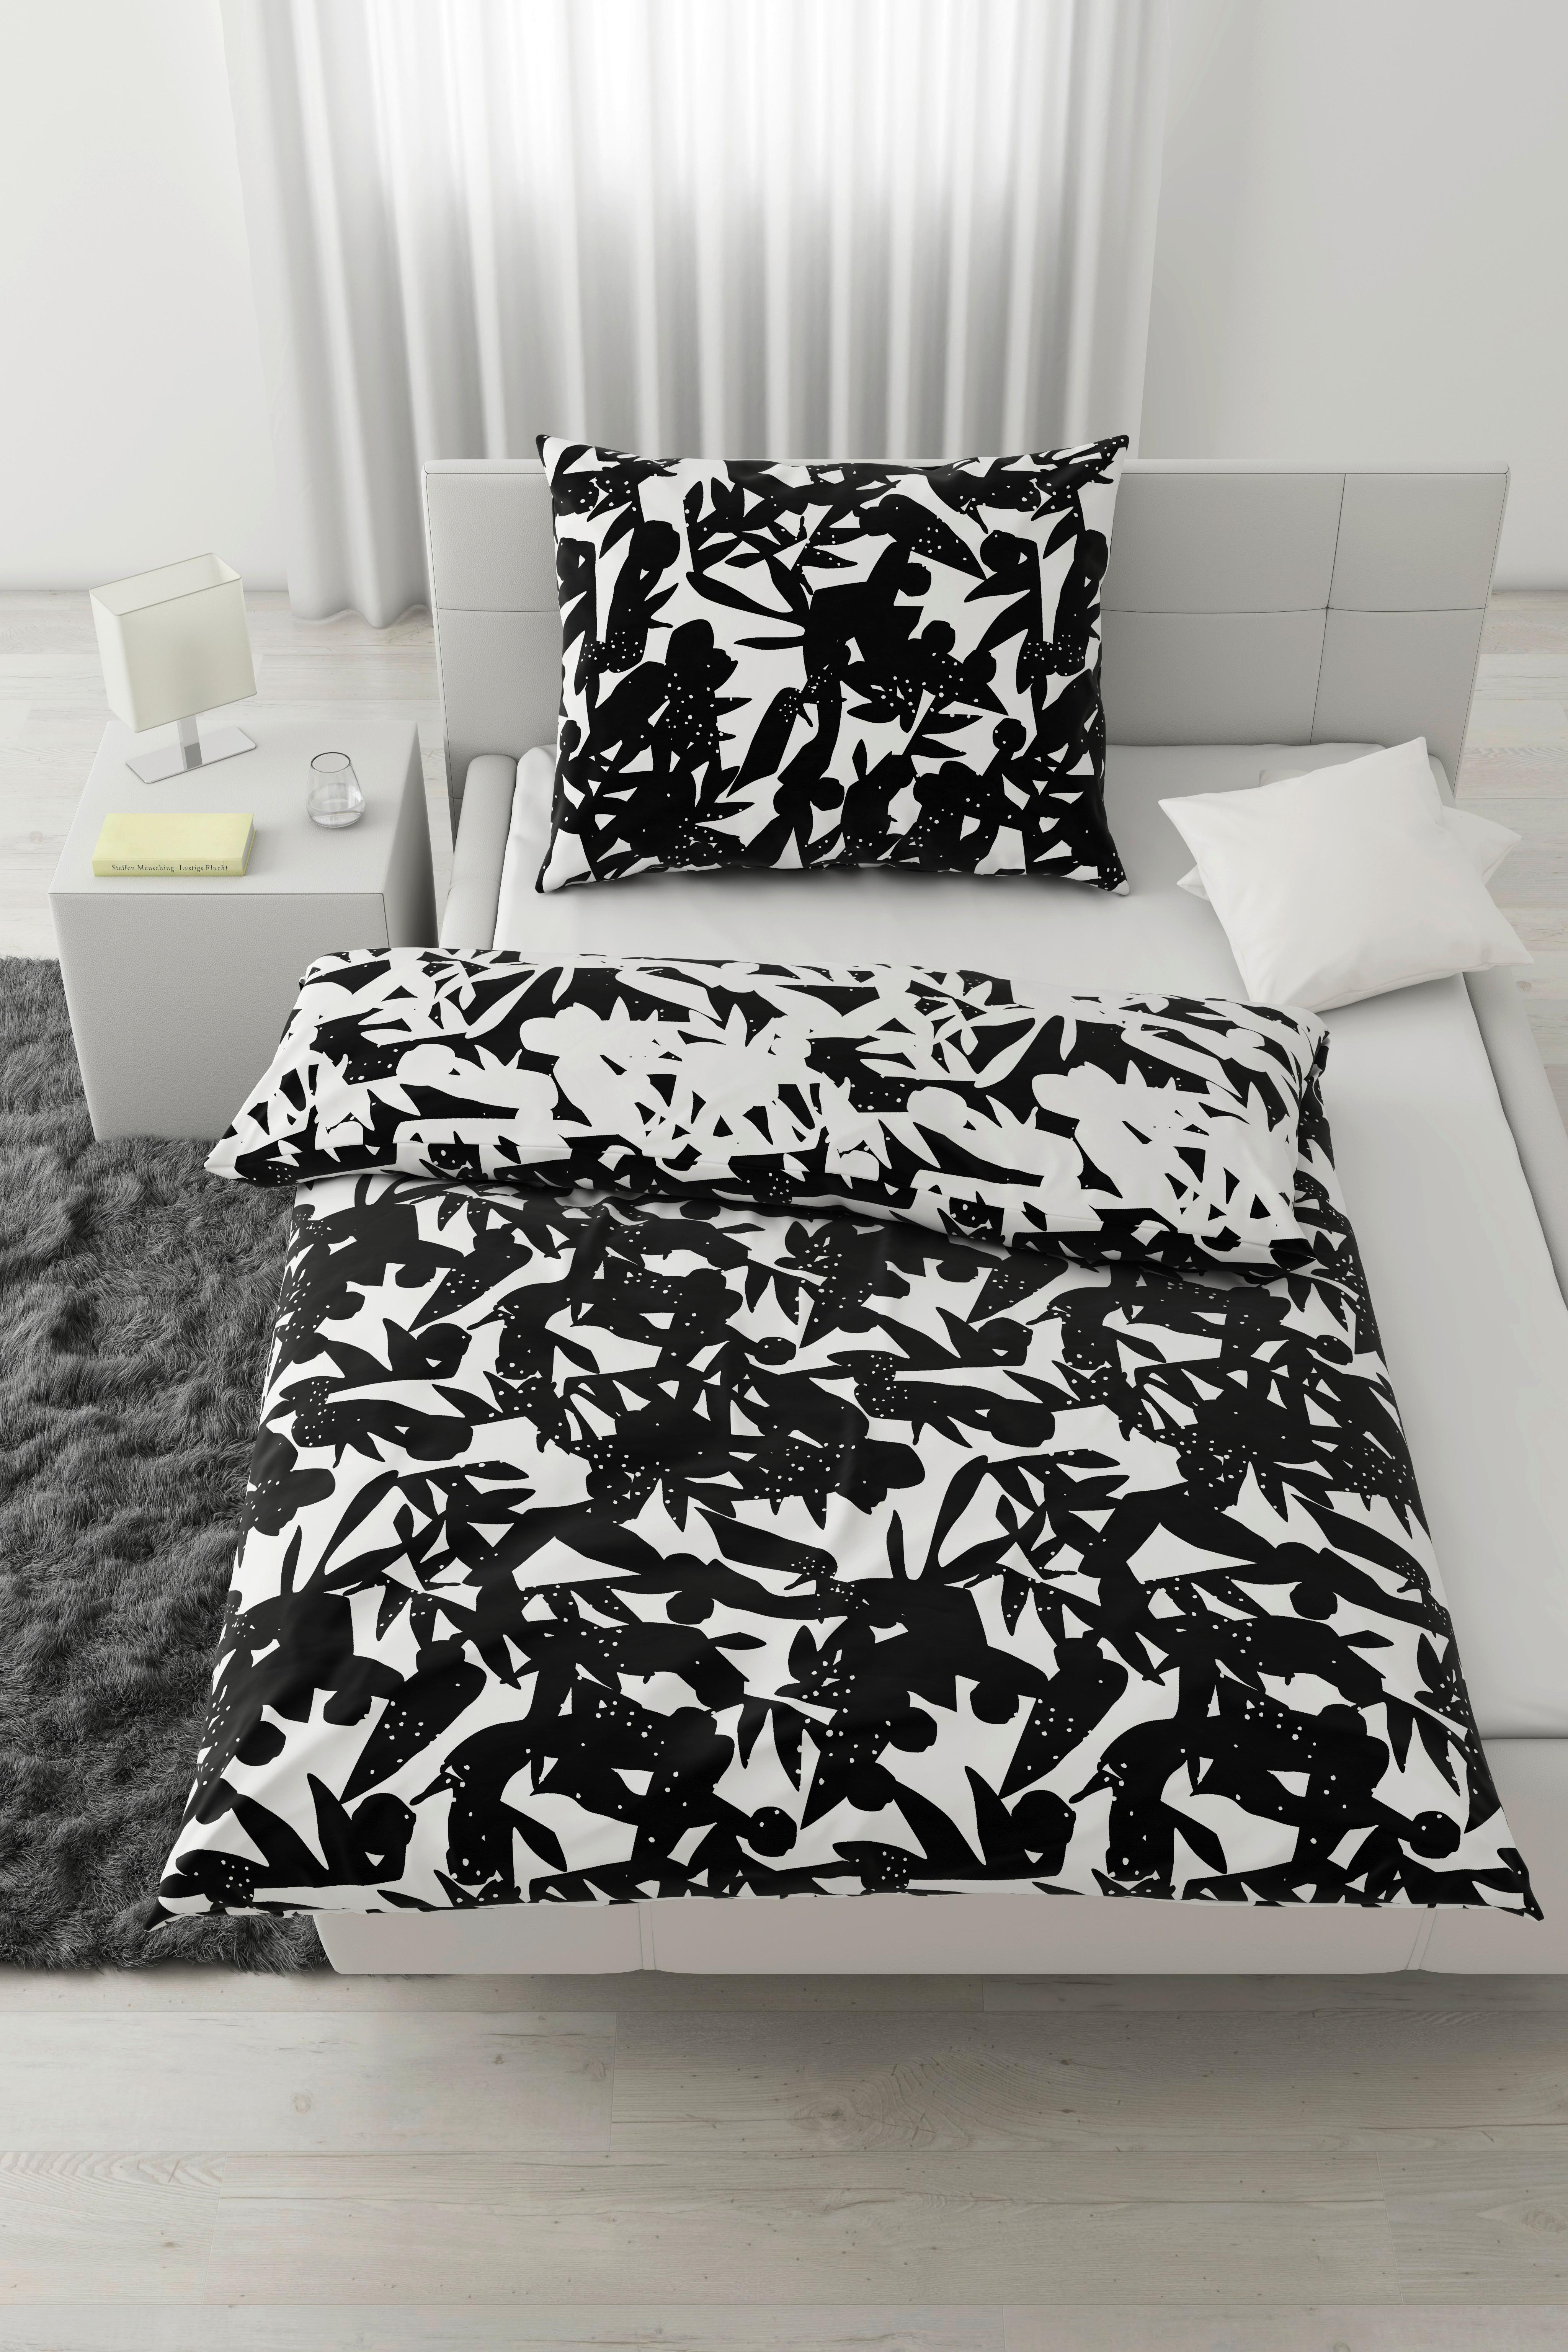 Obojstranná Posteľná Bielizeň Abstract Wende, 140/200cm - čierna/biela, Konvenčný, textil (140/200cm) - Modern Living